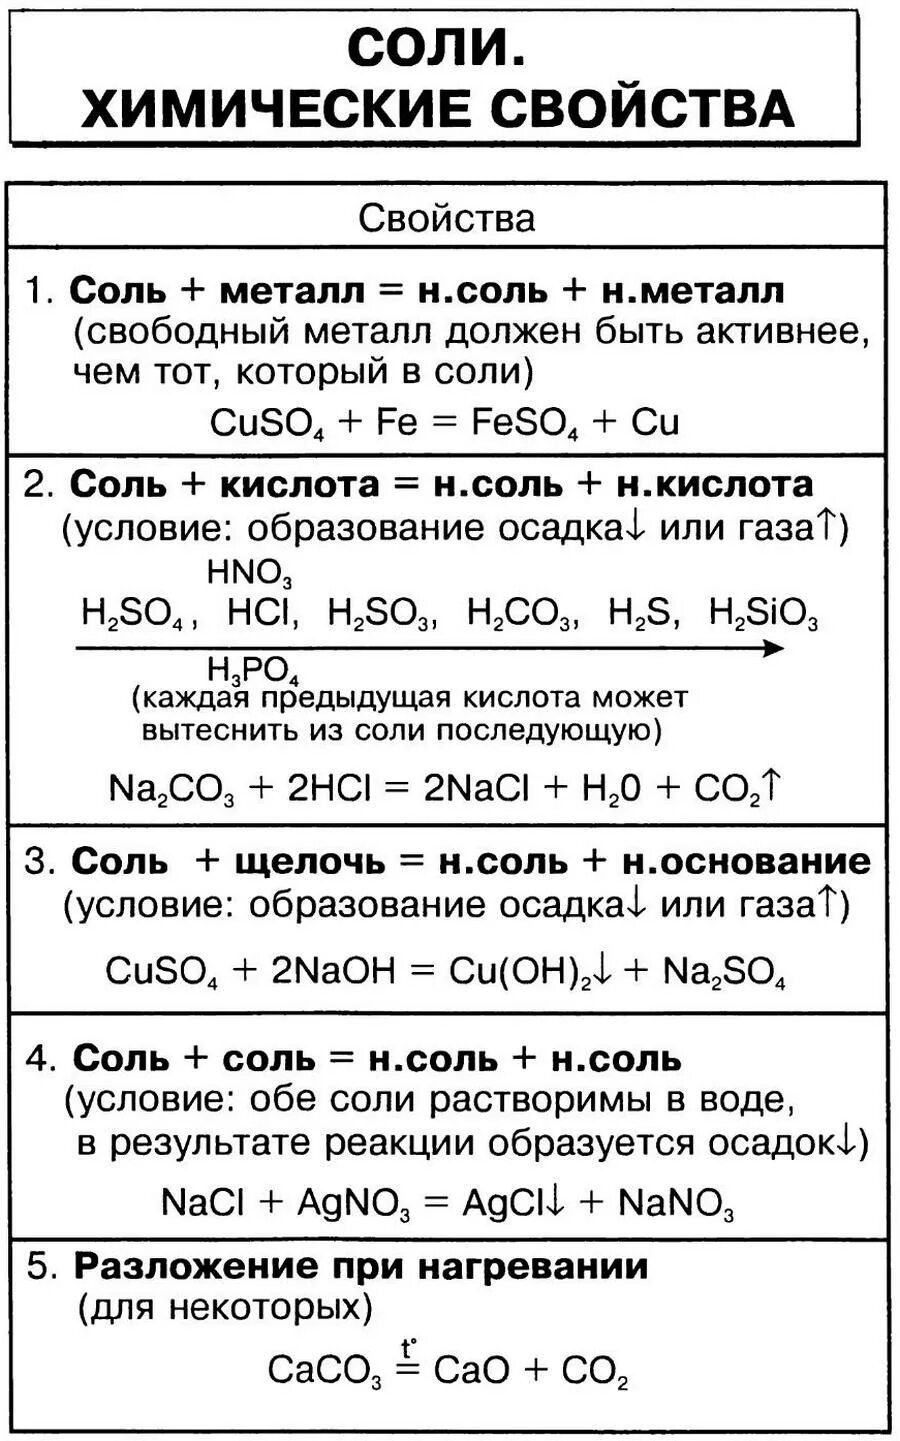 Химические свойства кислот таблица 8. Химические свойства солей 8 класс химия таблица. Свойства солей химия 8 класс. Соли химические свойства 8 класс таблица. Химические свойства солей 8 класс.